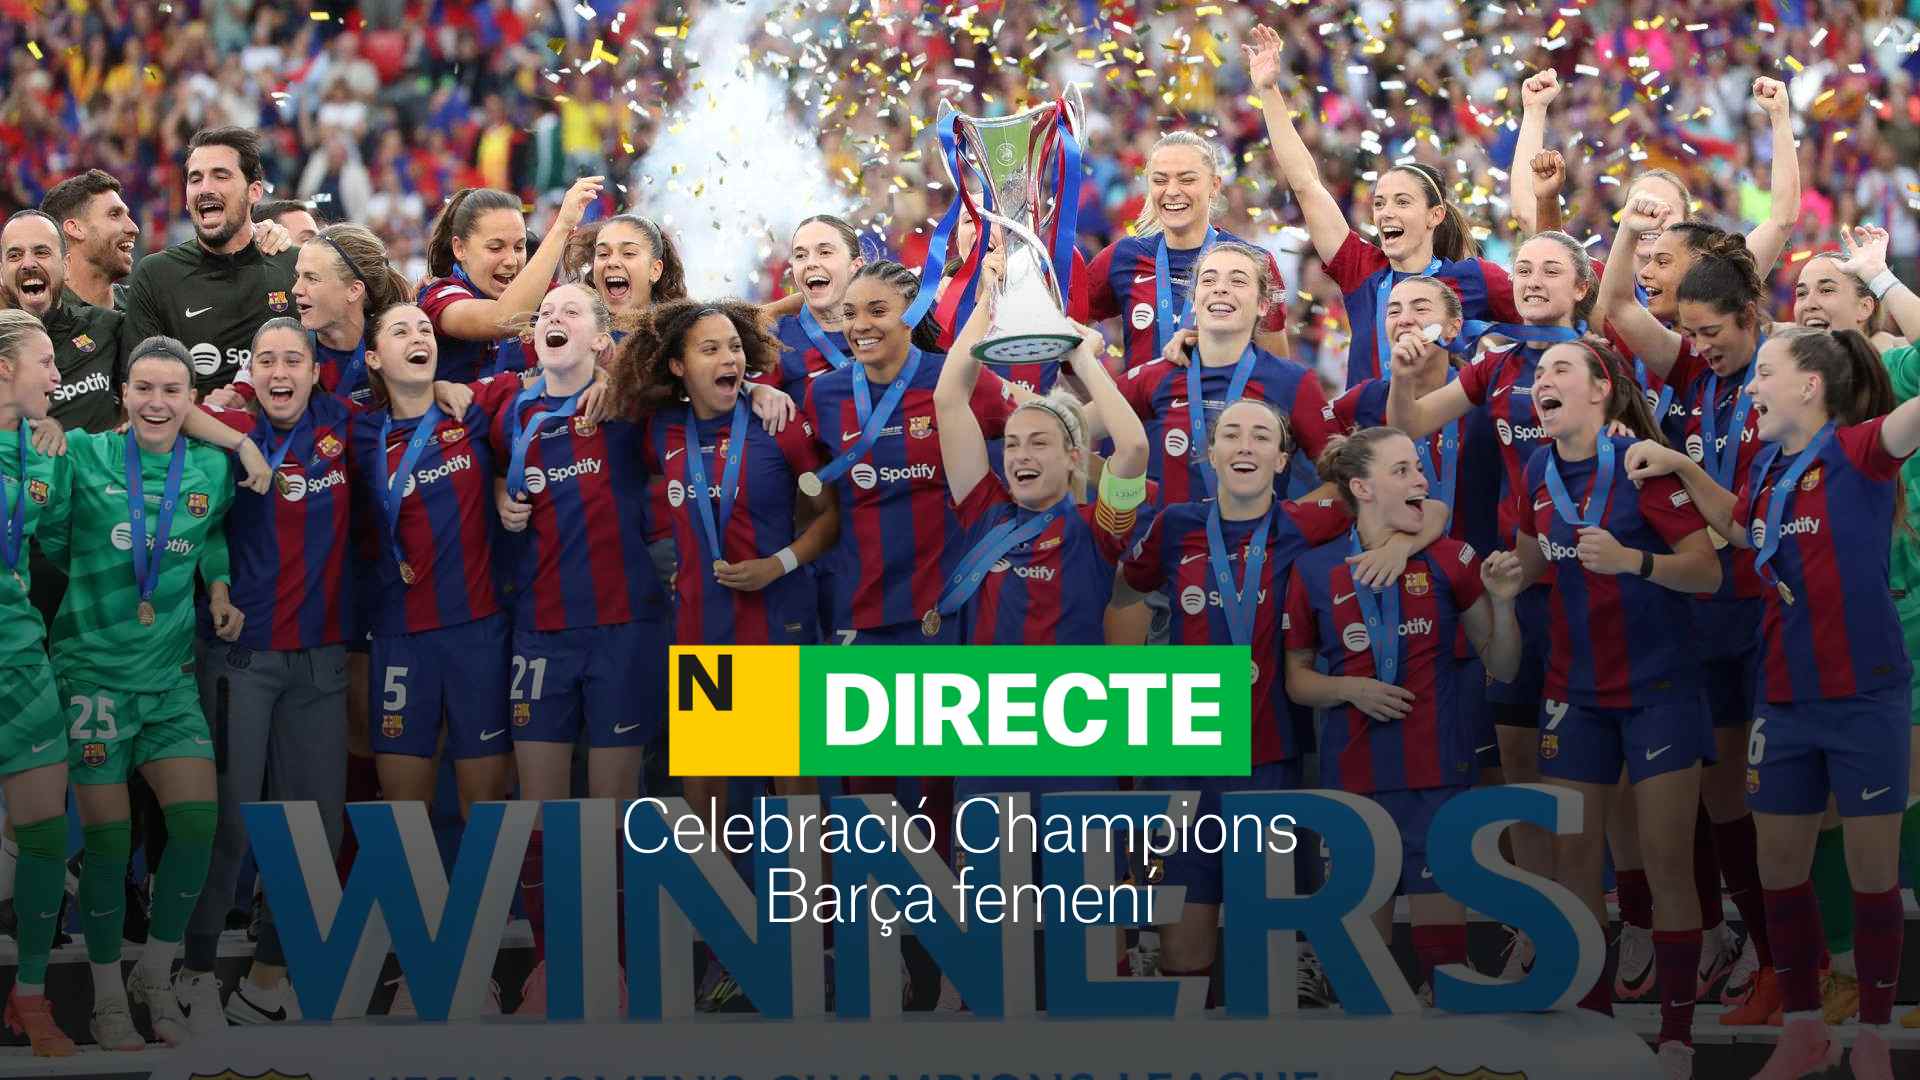 La celebración del Barça femenino de la Champions League, Directo | Última hora y reacciones